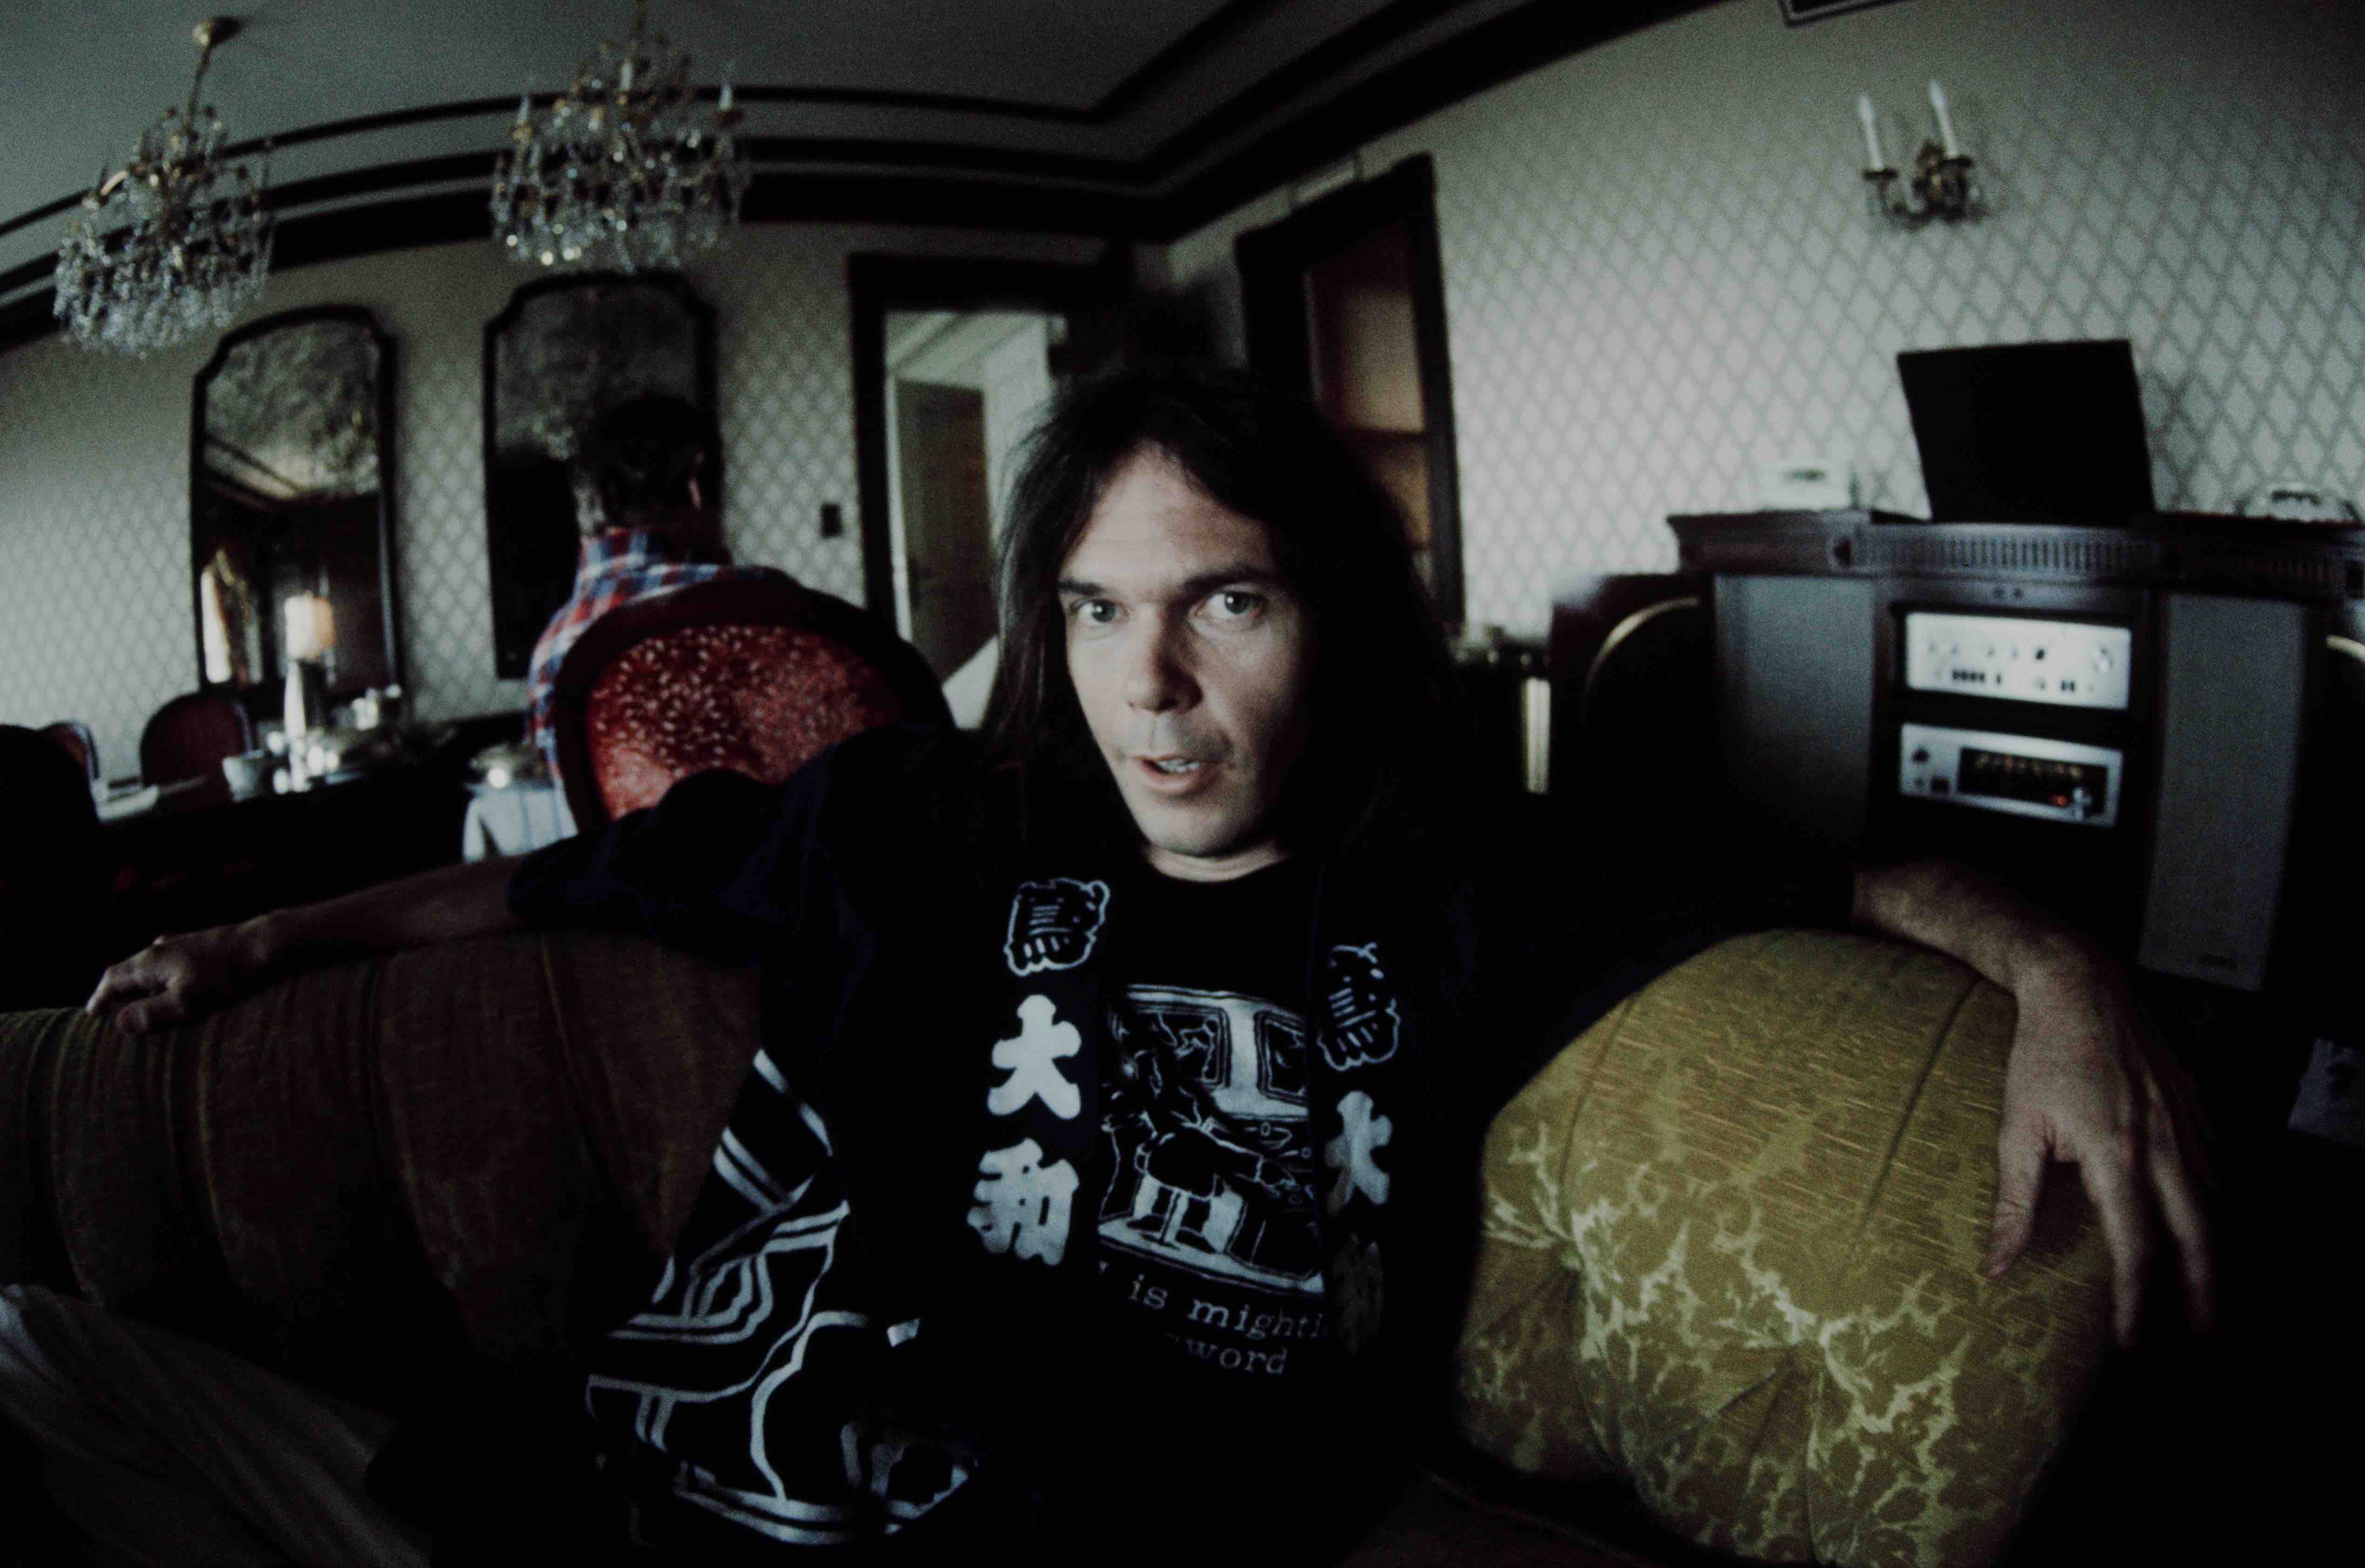 Neil-Young-Archives-Vol-III-Boxset-erscheint-im-September